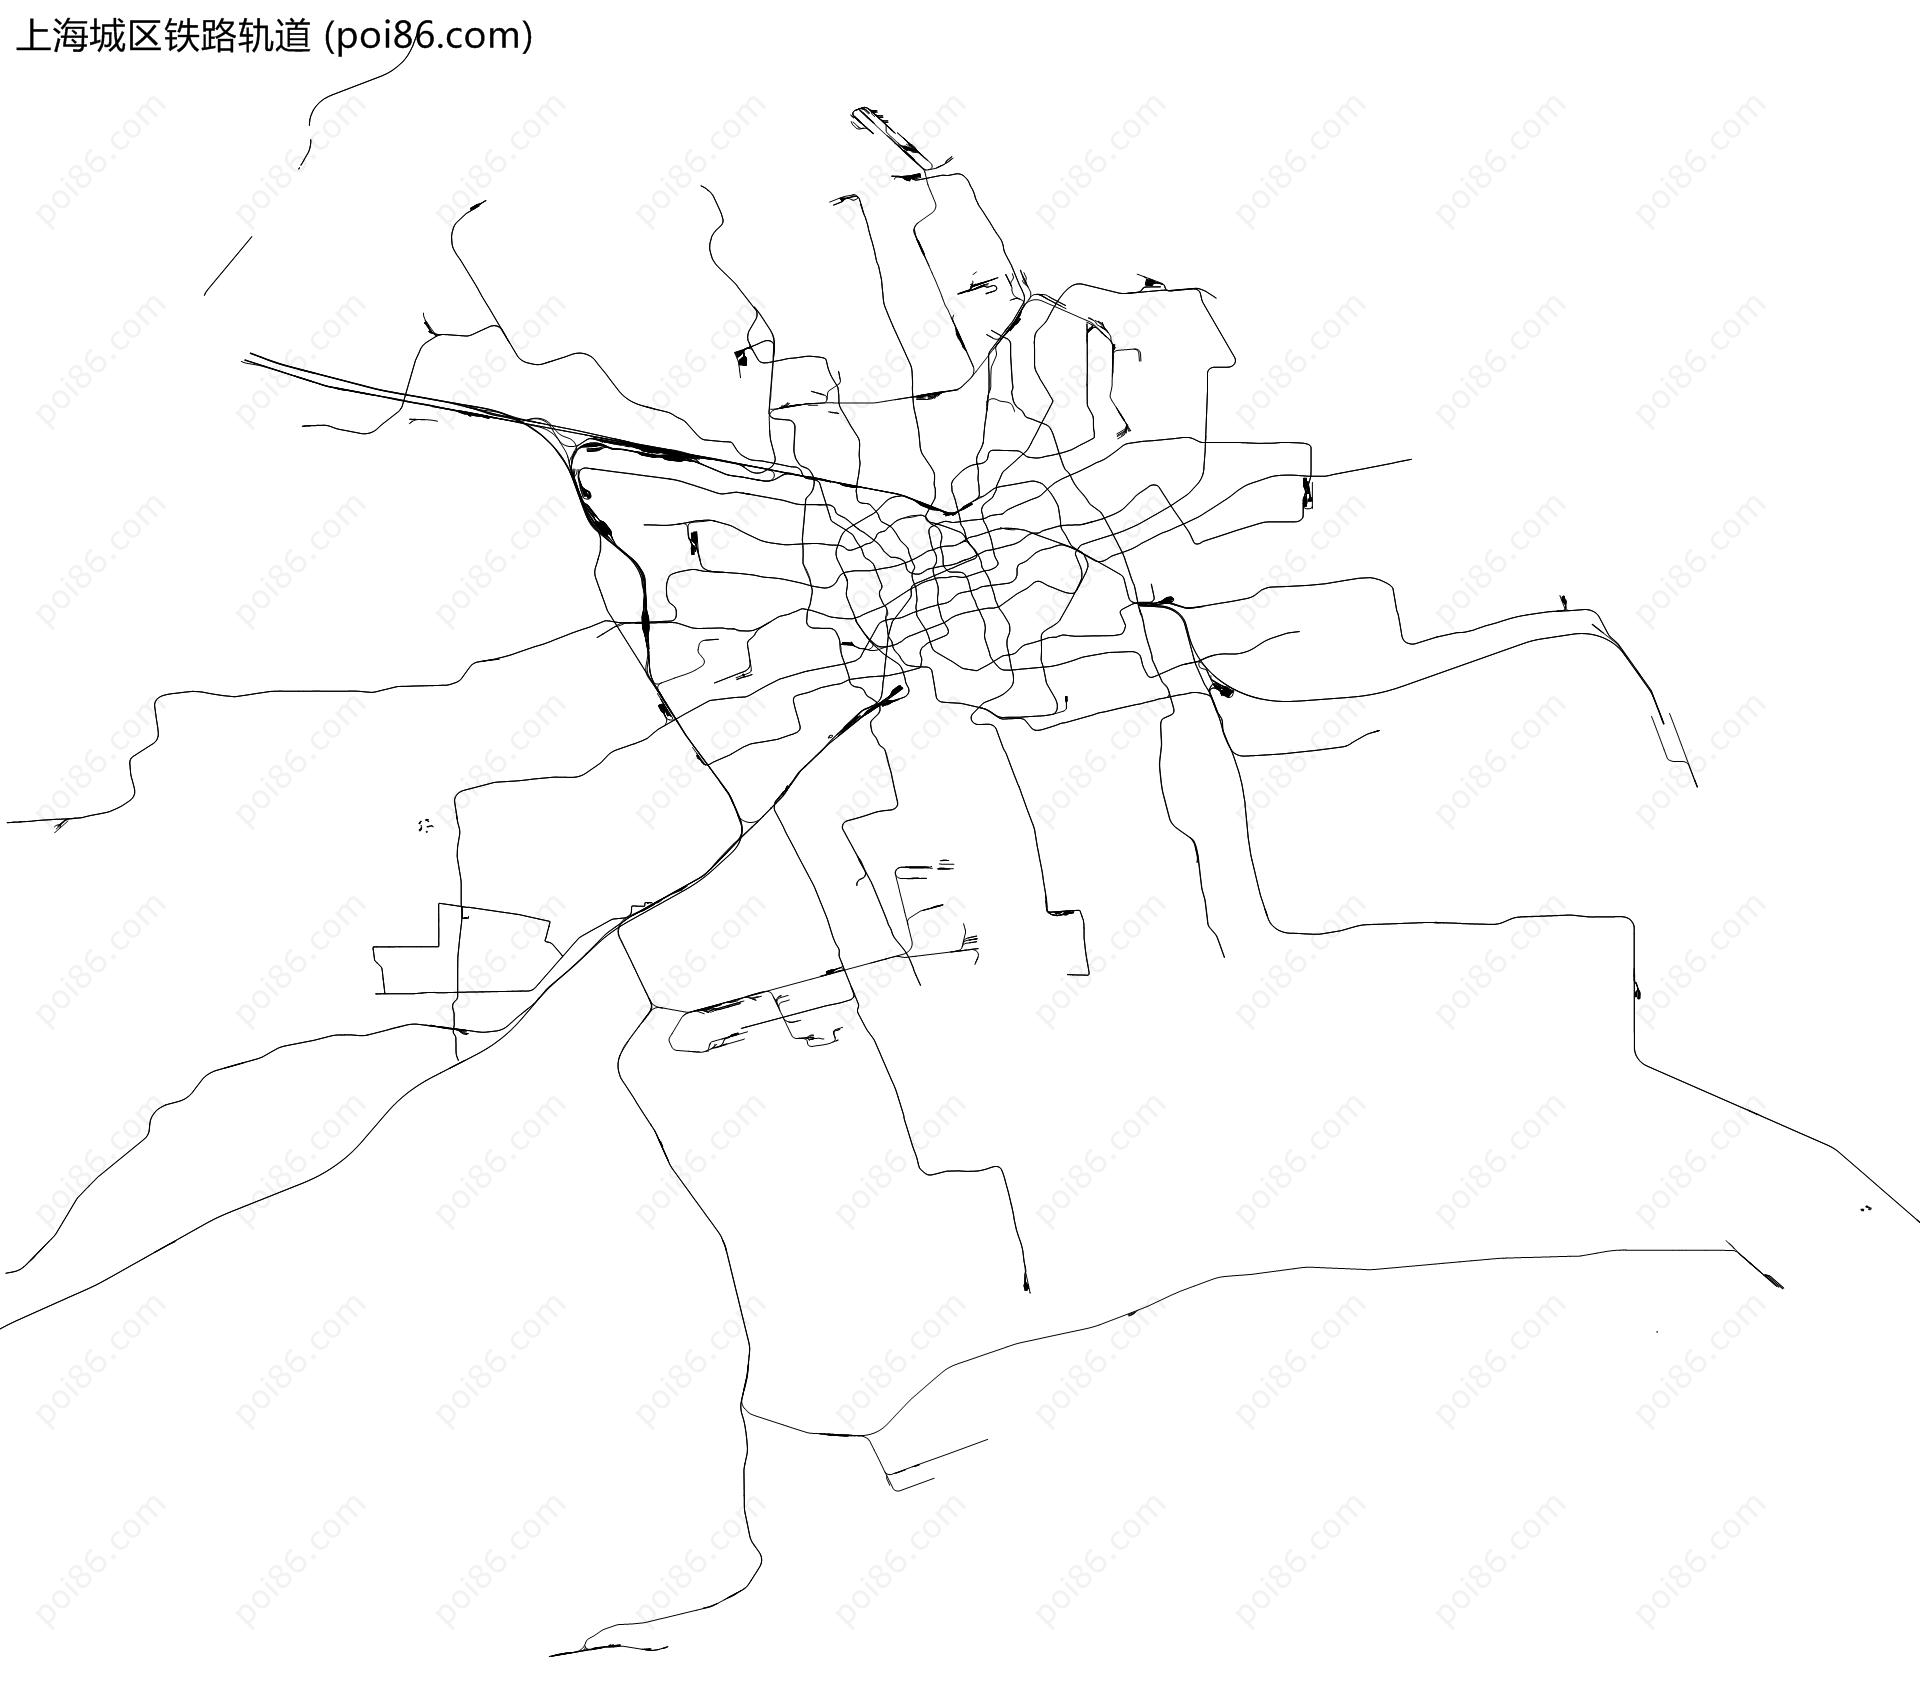 上海城区铁路轨道地图